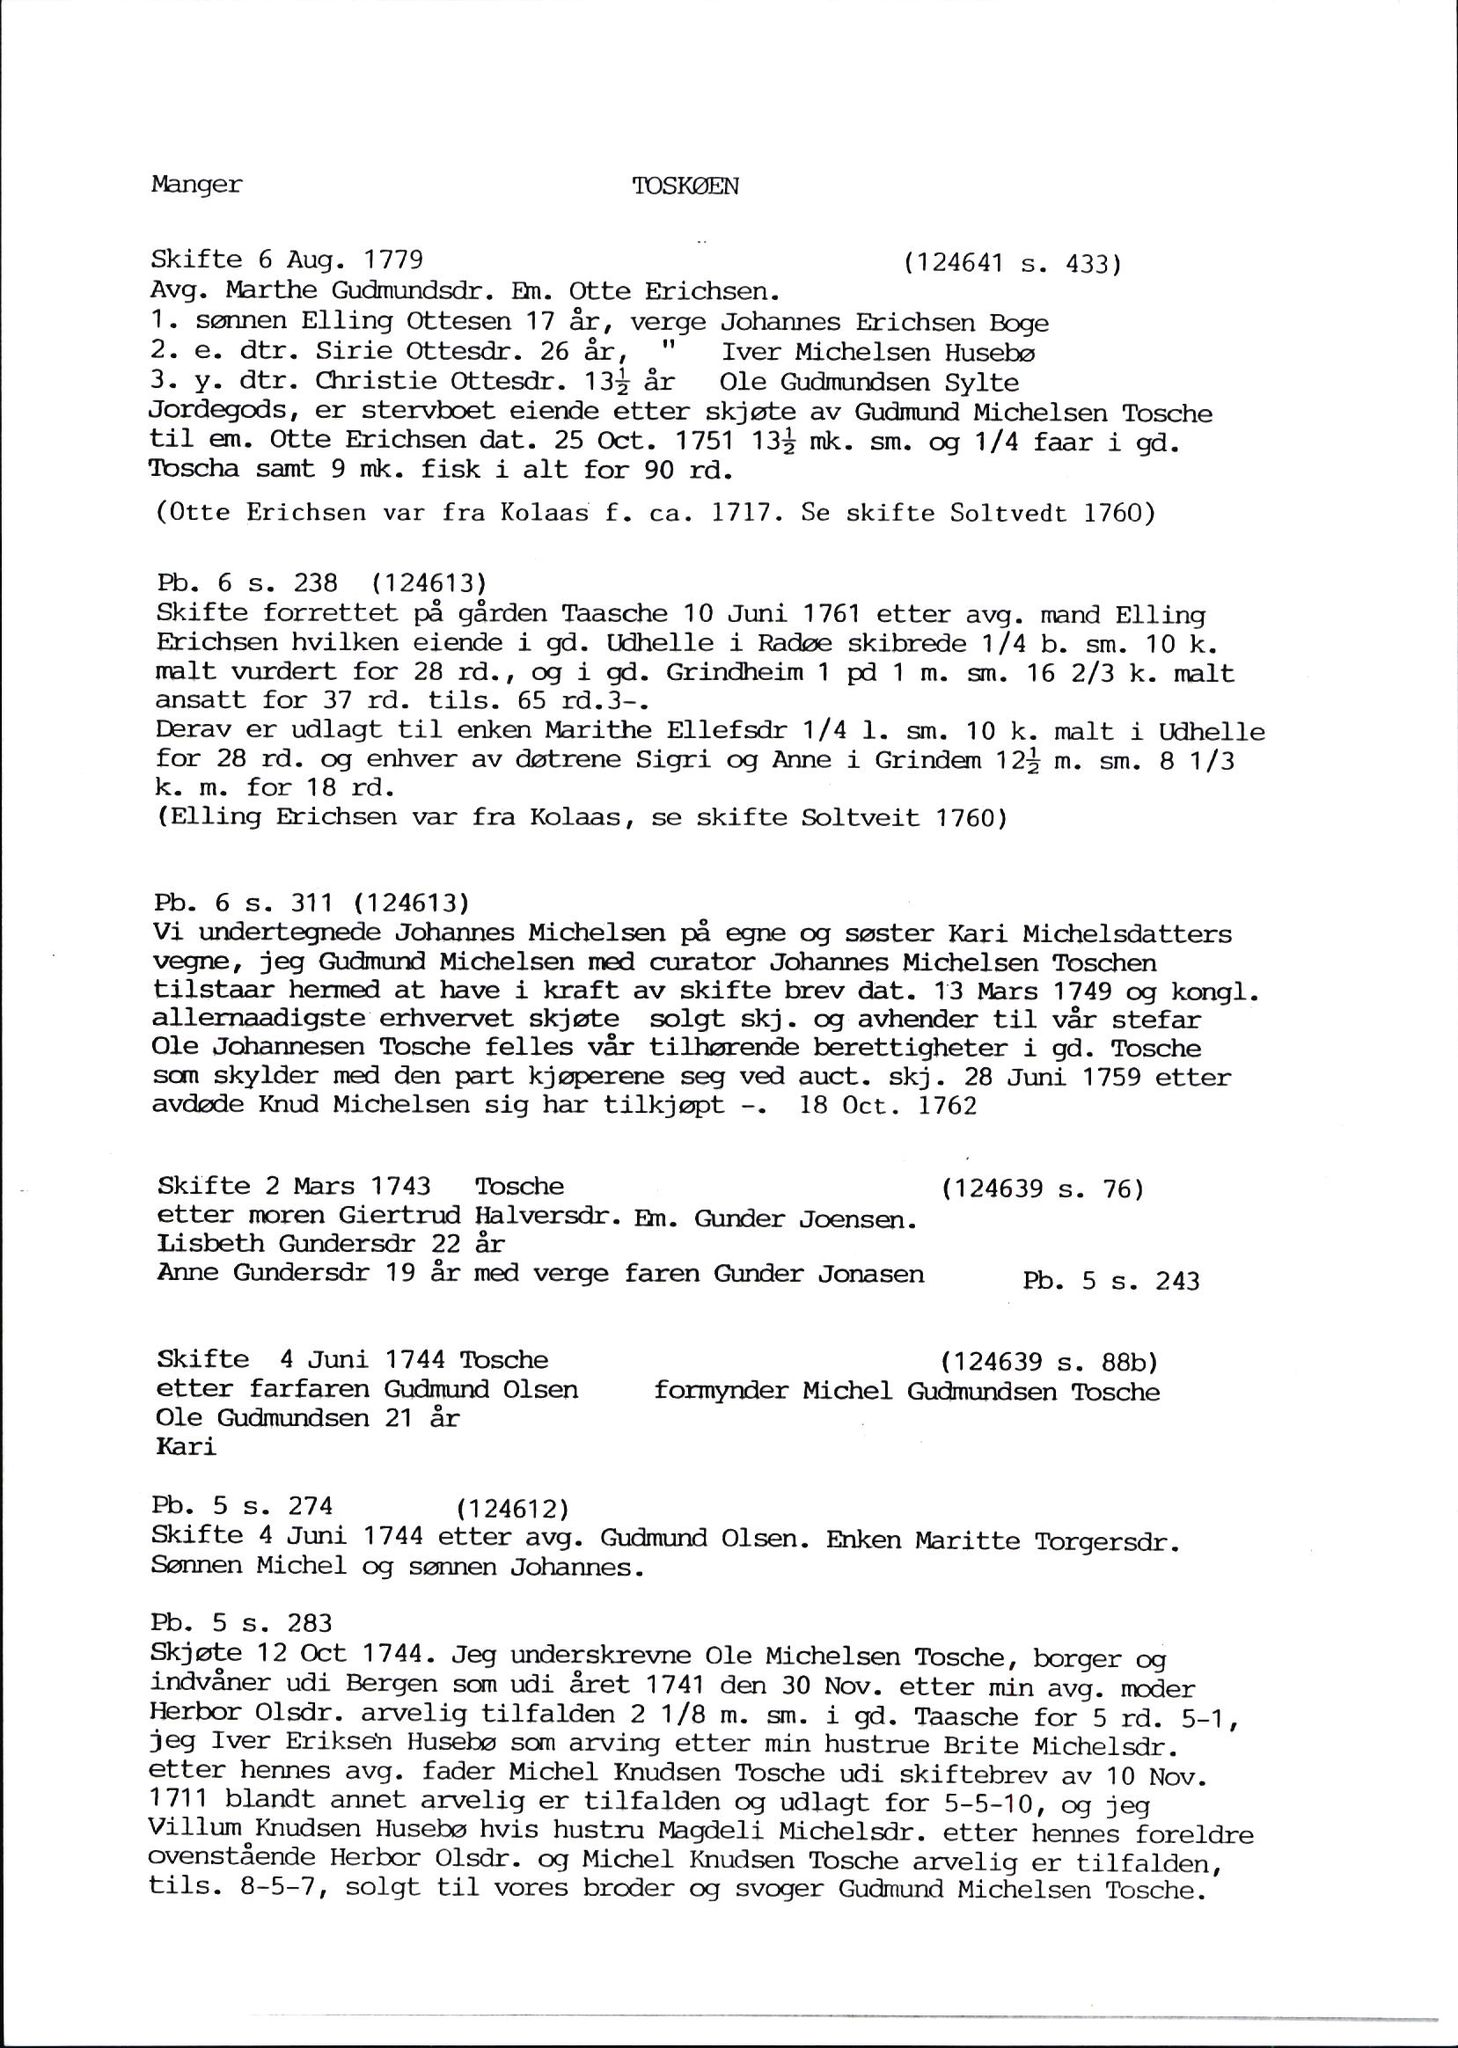 Samling av fulltekstavskrifter, SAB/FULLTEKST/D/12/0001: Skifter og andre opplysninger fra gårder i Manger prestegjeld (soknene Herdla, Bø, Sæbø og Manger) ca. 1700 - ca. 1800, 1700-1800, s. 53